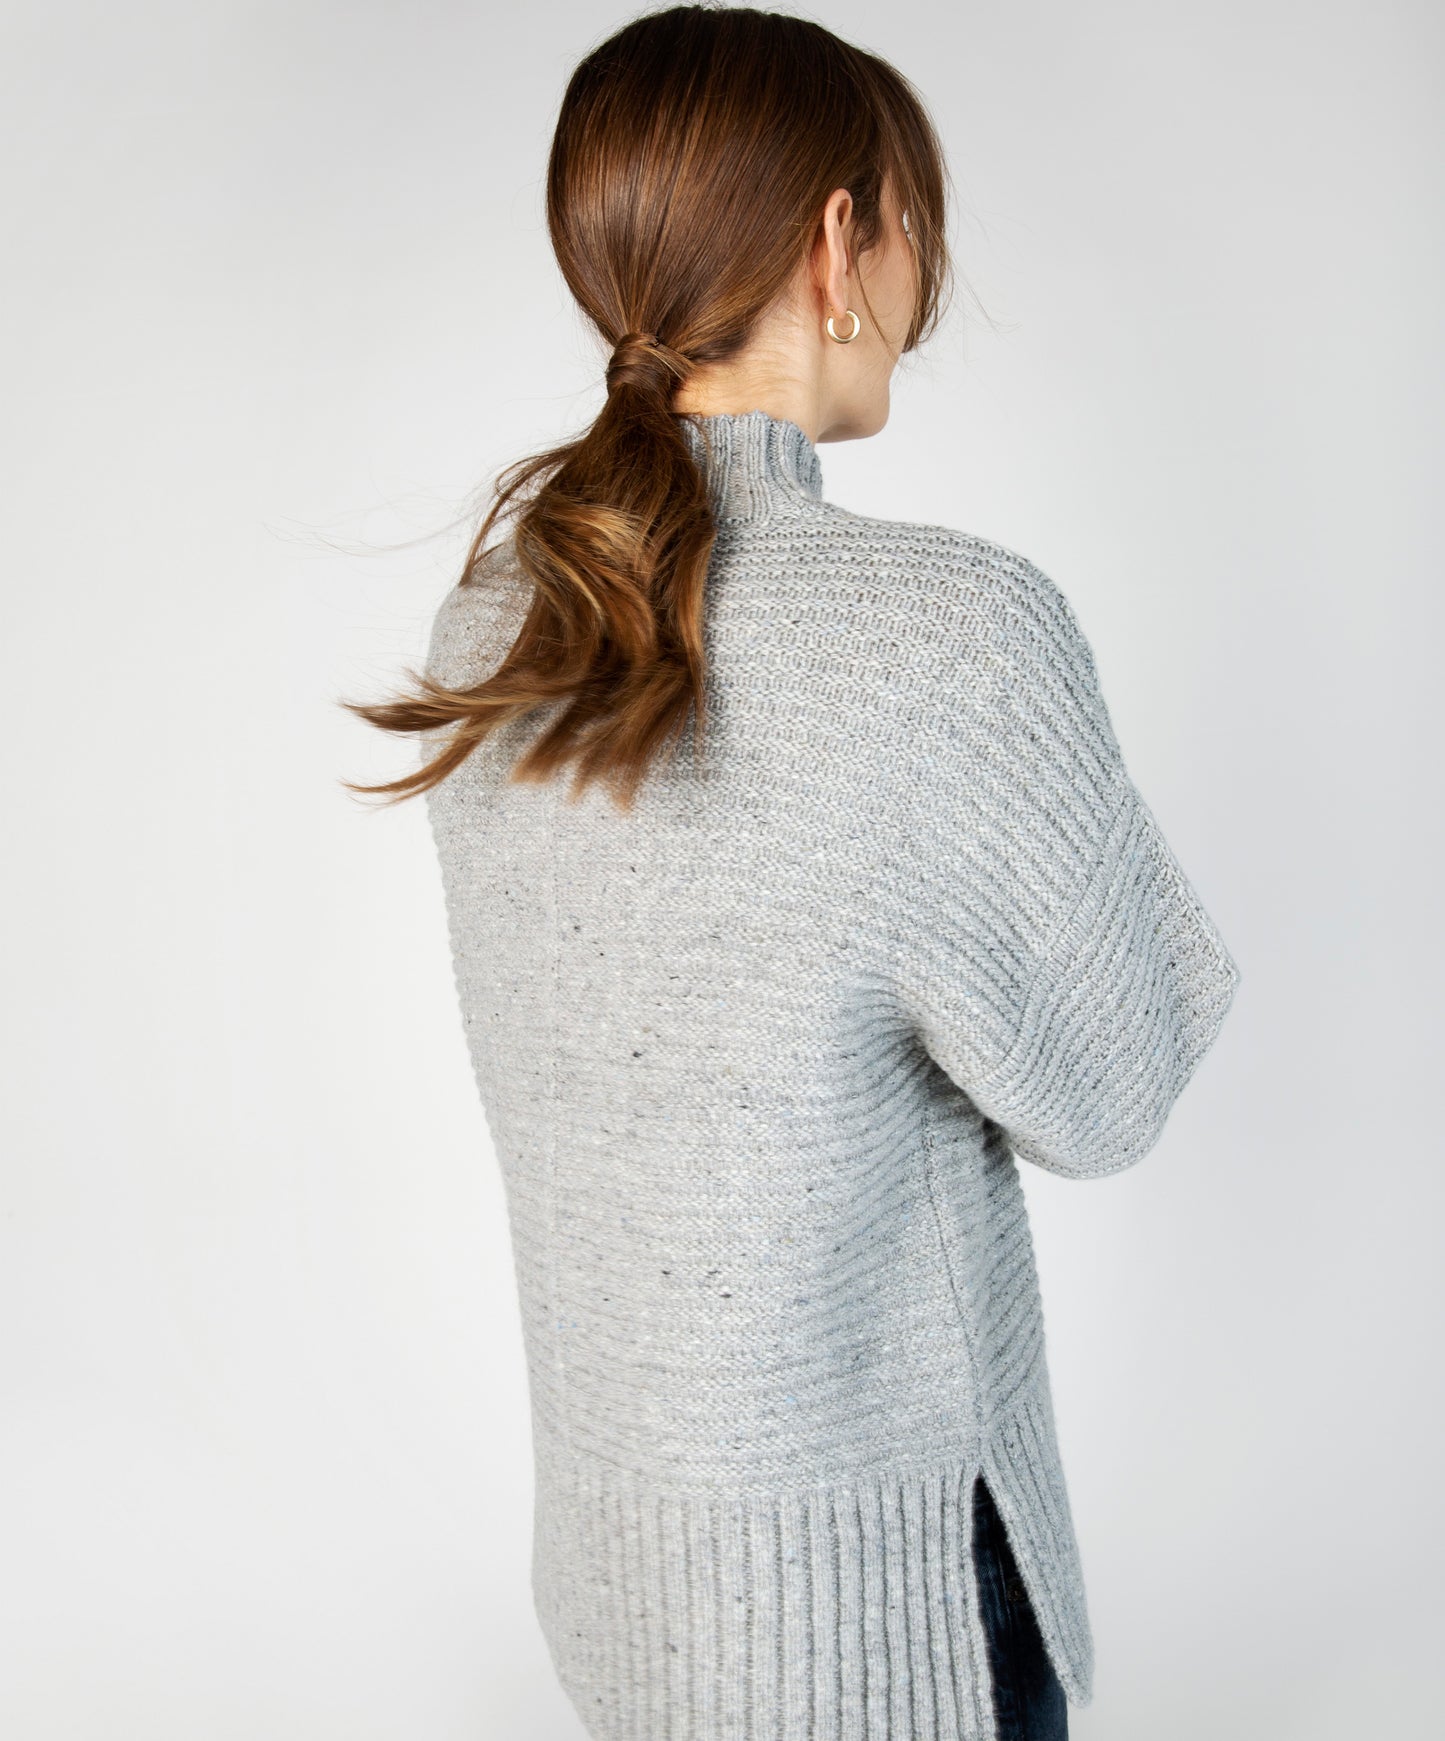 IrelandsEye Knitwear ‘Iris’ Contrast Panel Funnel Neck Sweater Pearl Grey